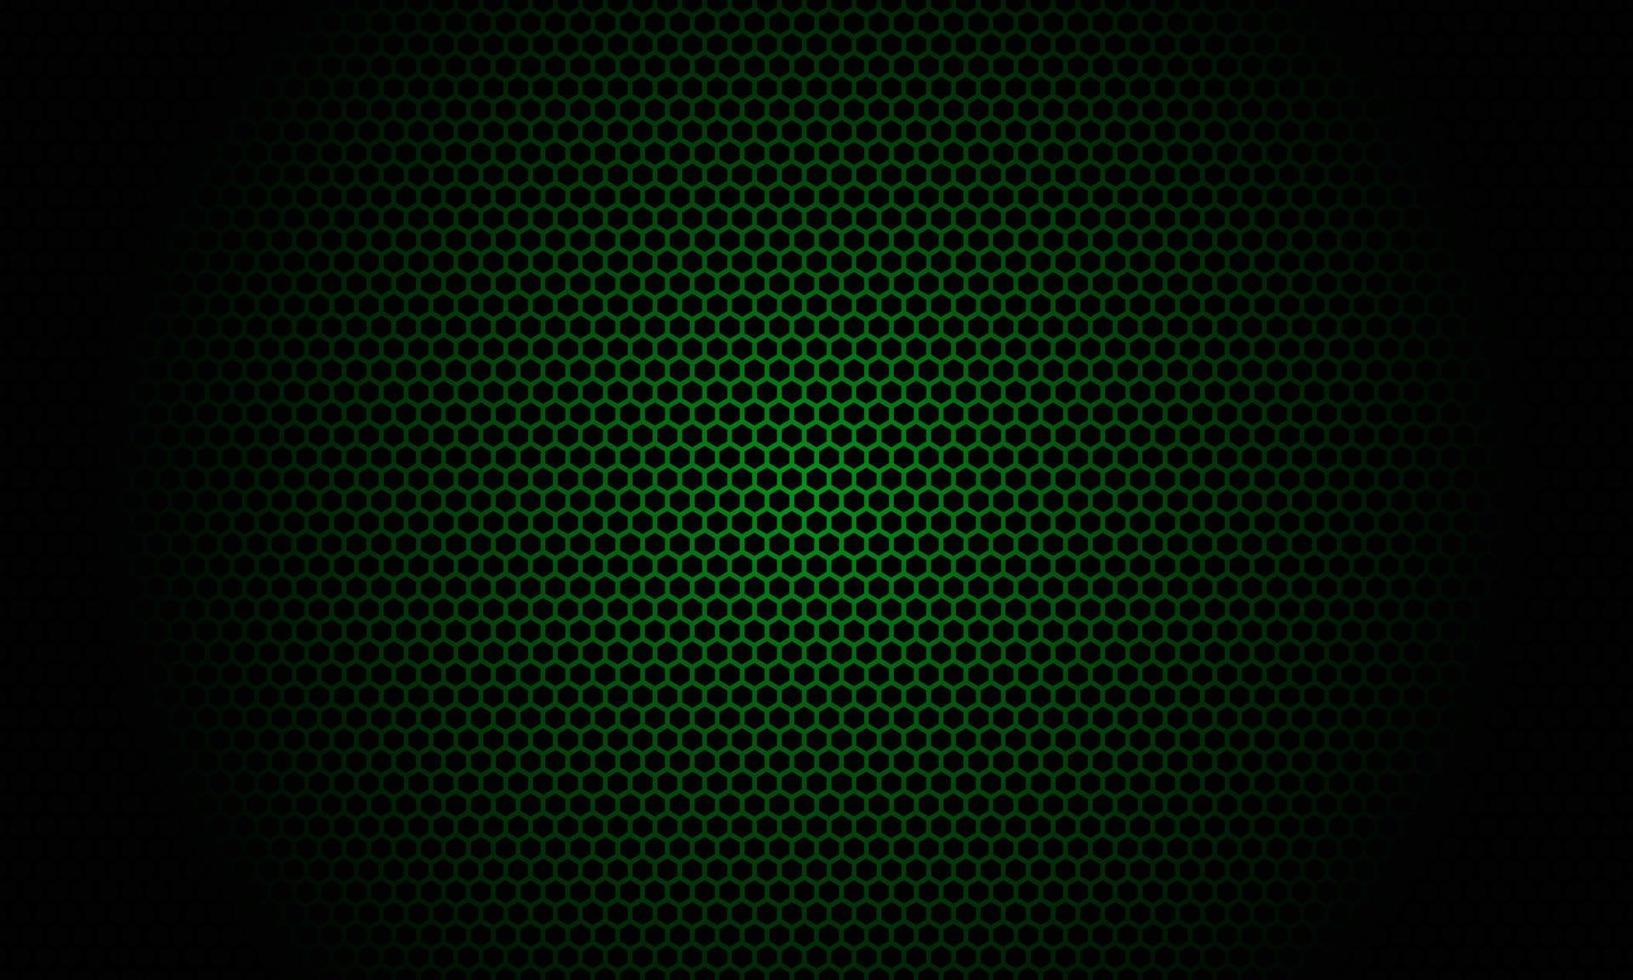 Hintergrund mit einem sechseckigen Musterdesign mit schwarzen und dunkelgrünen Farben vektor